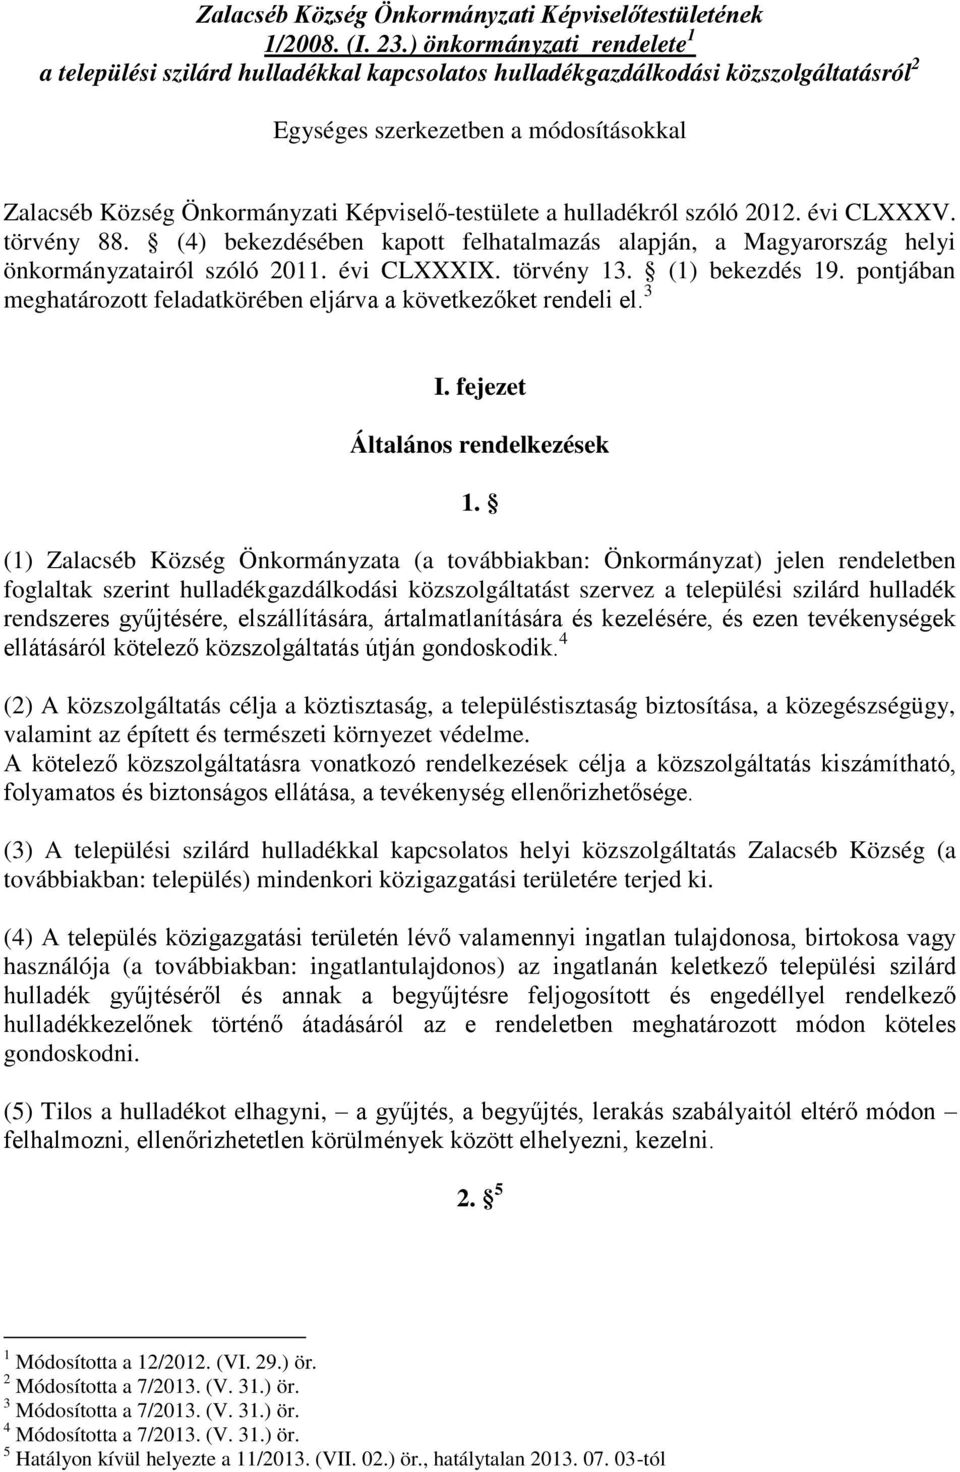 Képviselő-testülete a hulladékról szóló 2012. évi CLXXXV. törvény 88. (4) bekezdésében kapott felhatalmazás alapján, a Magyarország helyi önkormányzatairól szóló 2011. évi CLXXXIX. törvény 13.